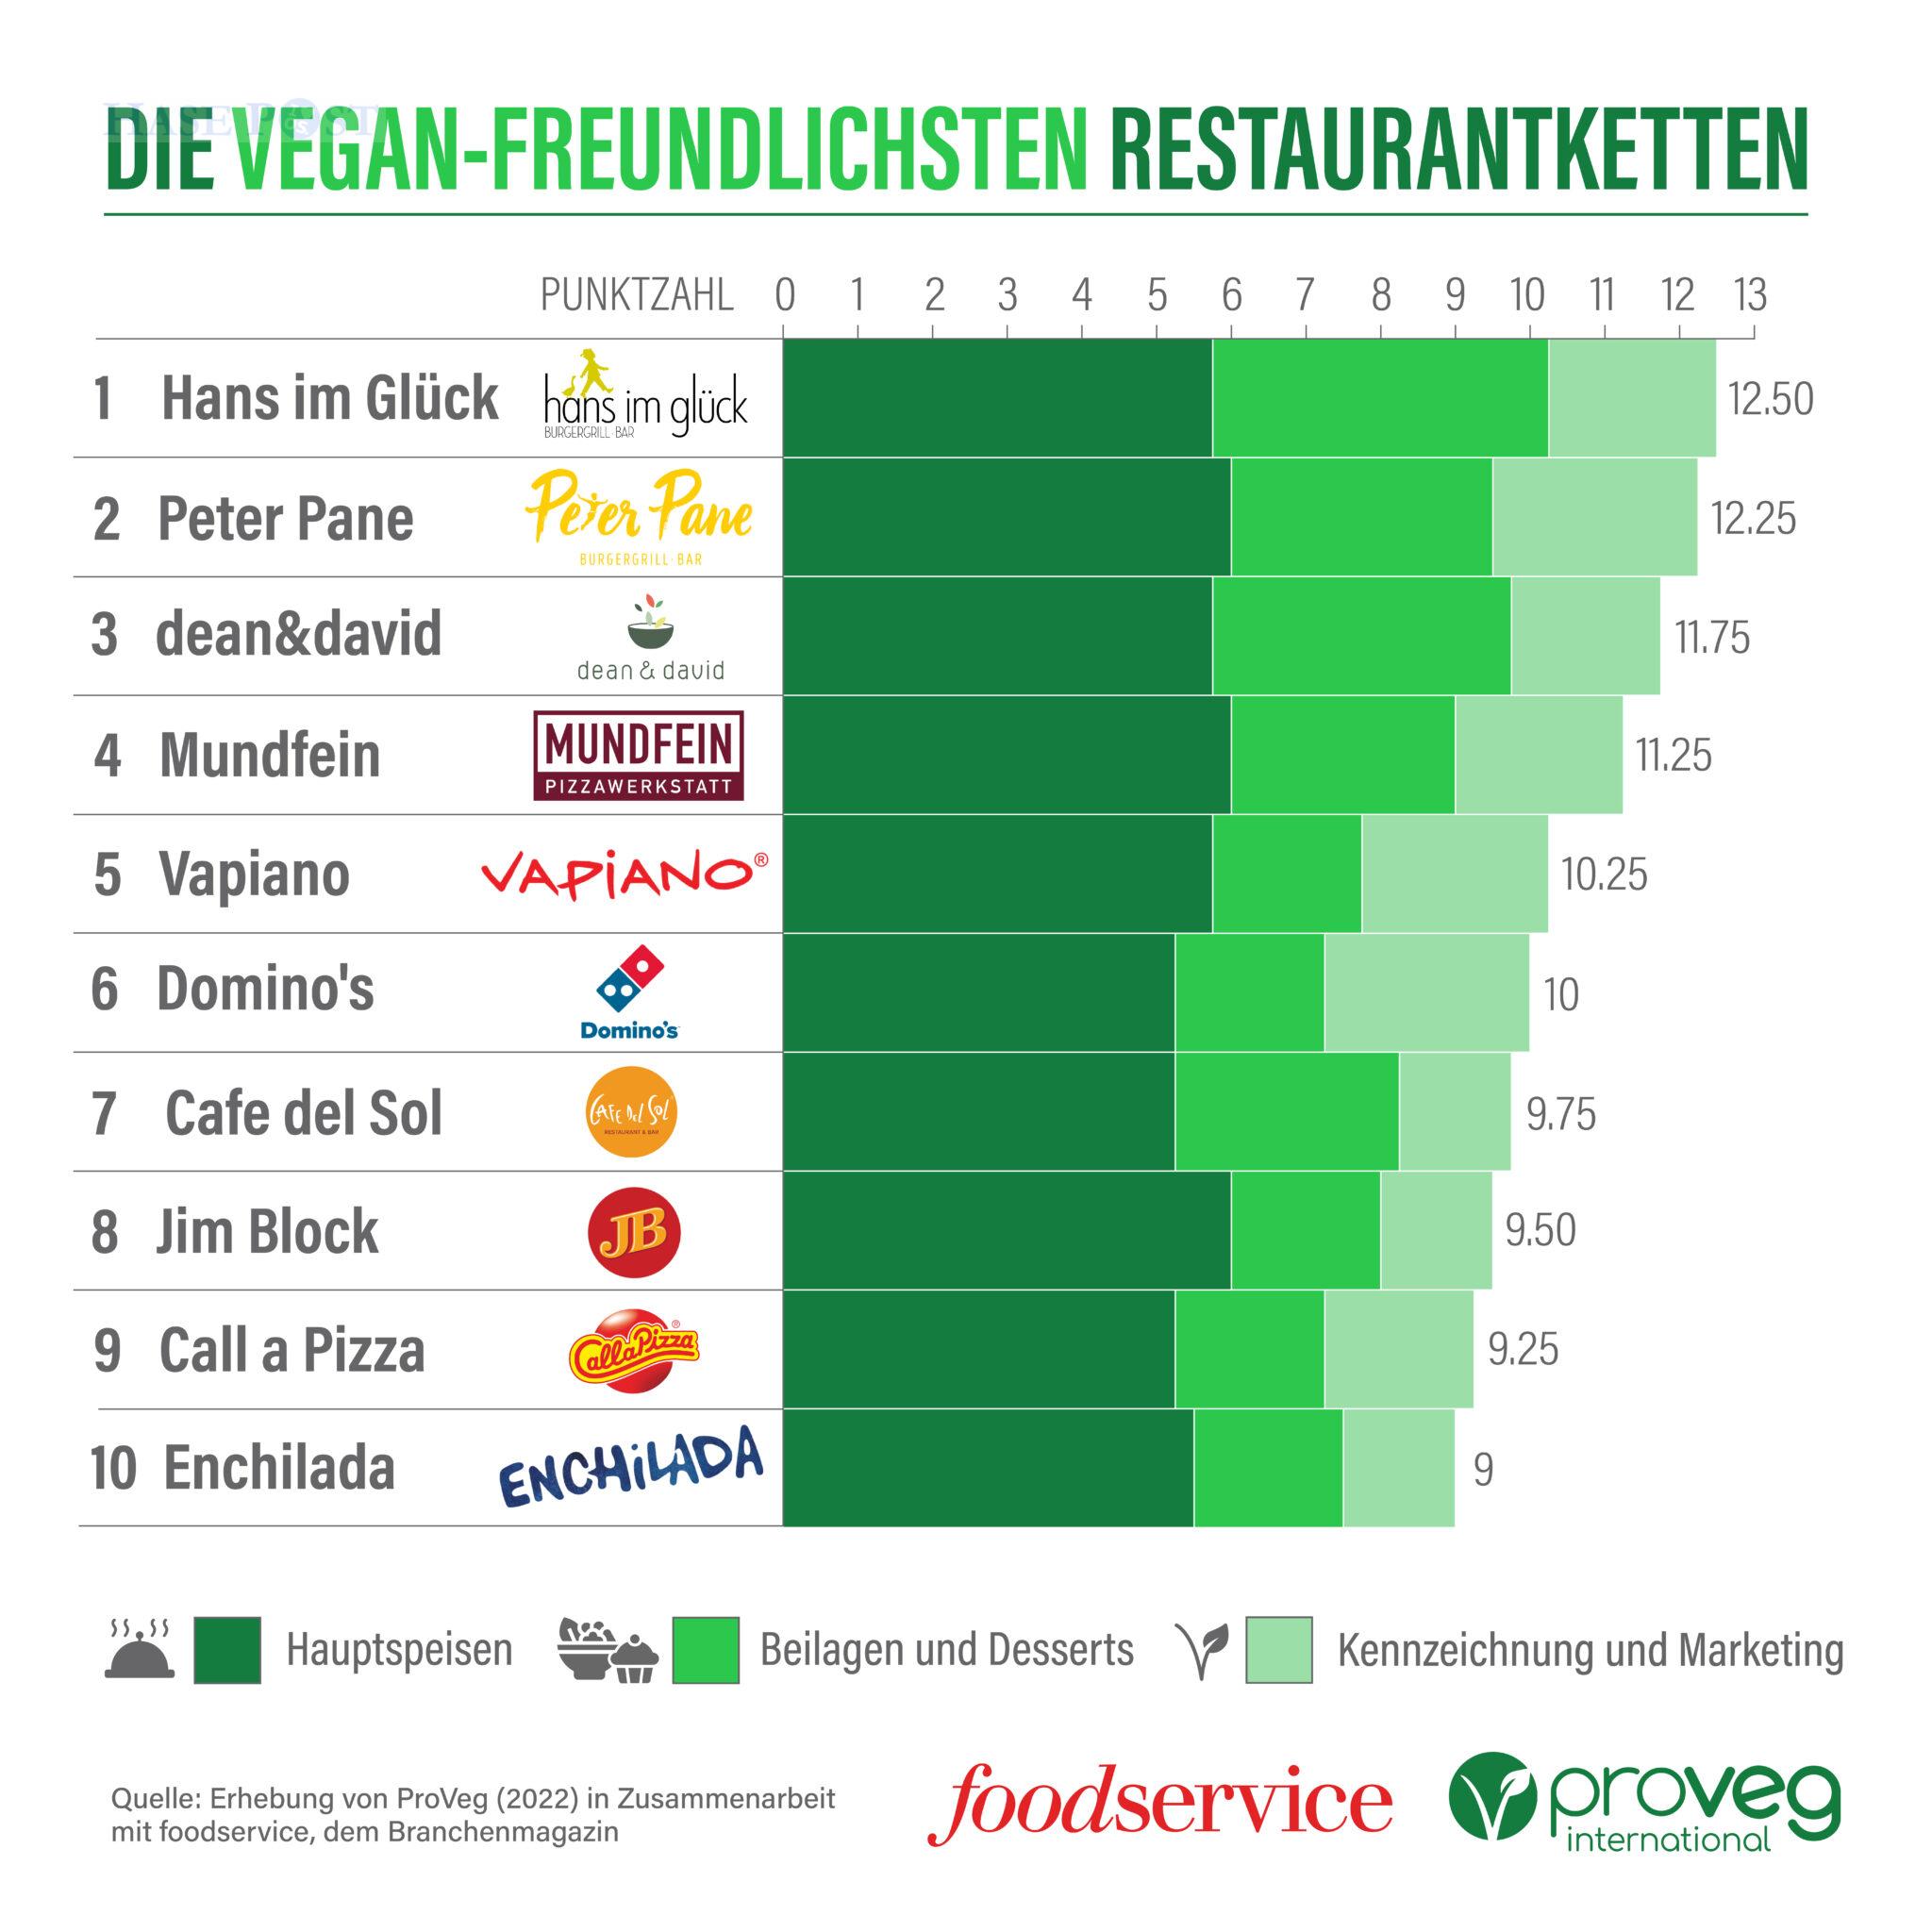 Ranking vegan-freundliche Ketten 2022 / Quelle: Erhebung von ProVeg (2022) in Zusammenarbeit mit foodservice, dem Branchenmagazin